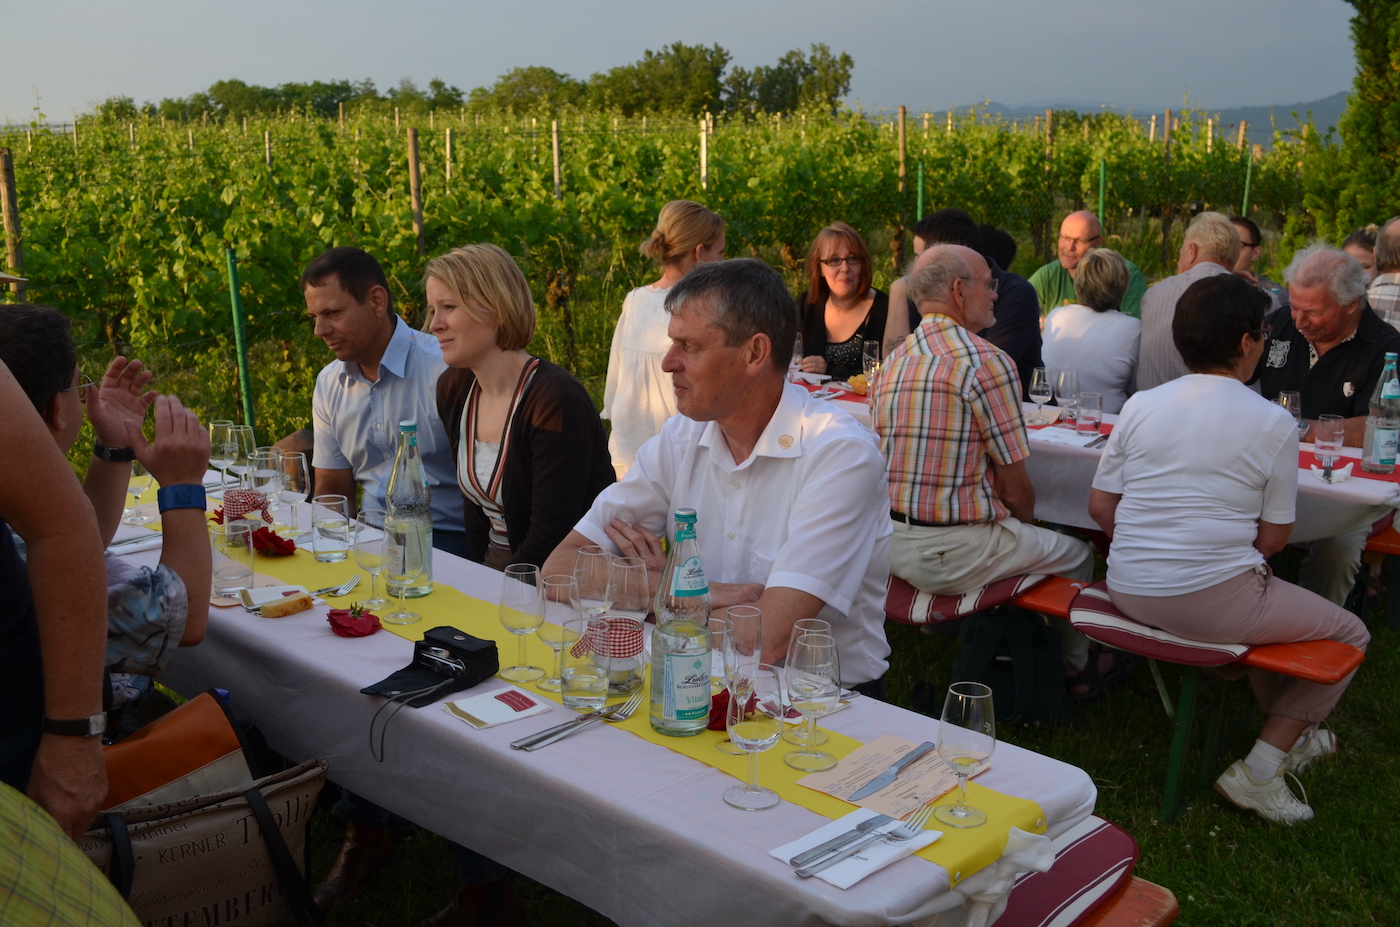 An langen, festlich eingedeckten Tischen sitzen zahlreiche Menschen zusammen und genießen eine Weinprobe bei guter Stimmung.